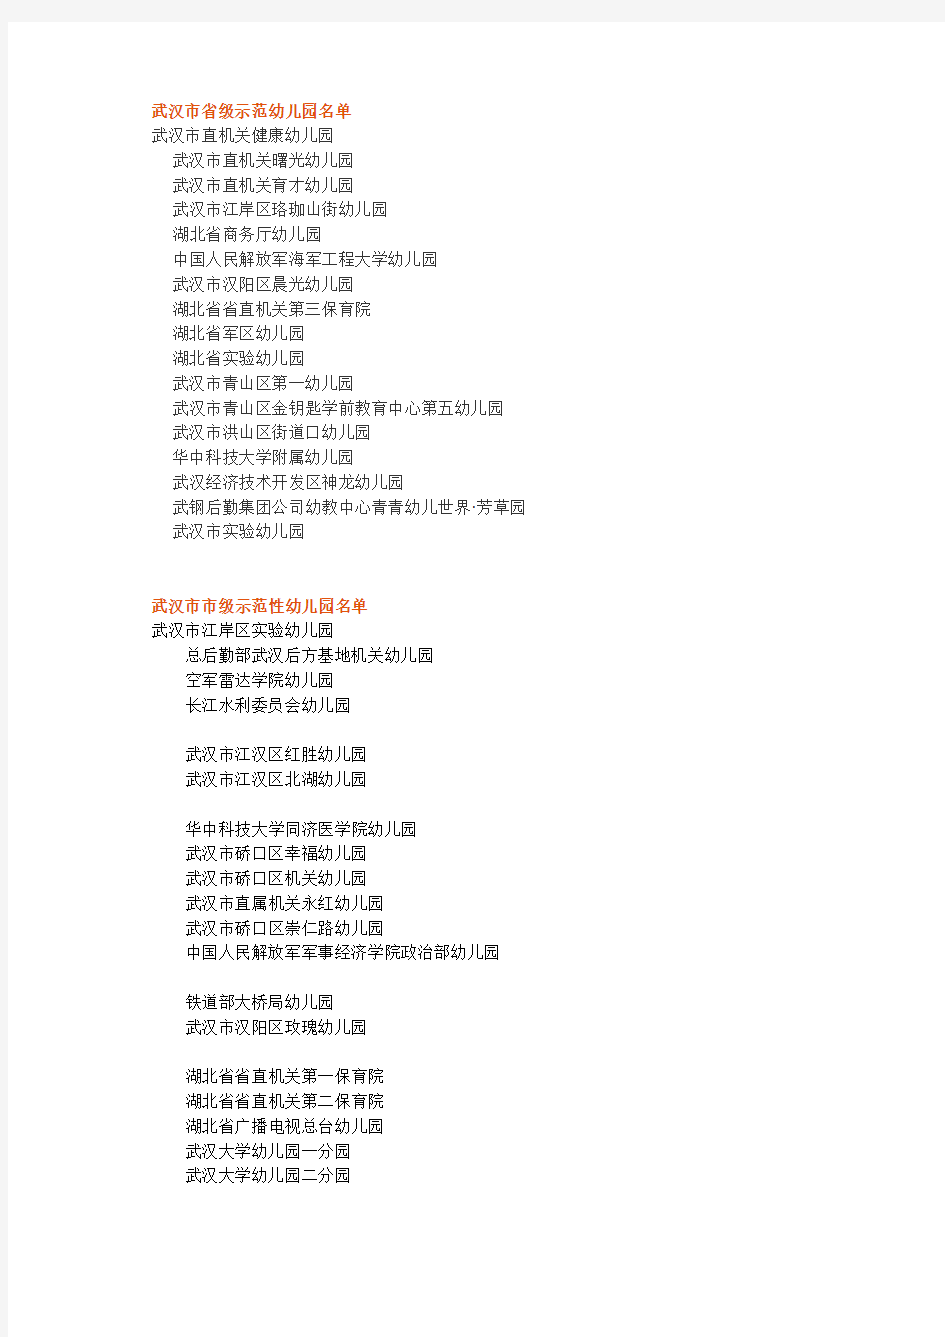 武汉市市级示范性幼儿园名单